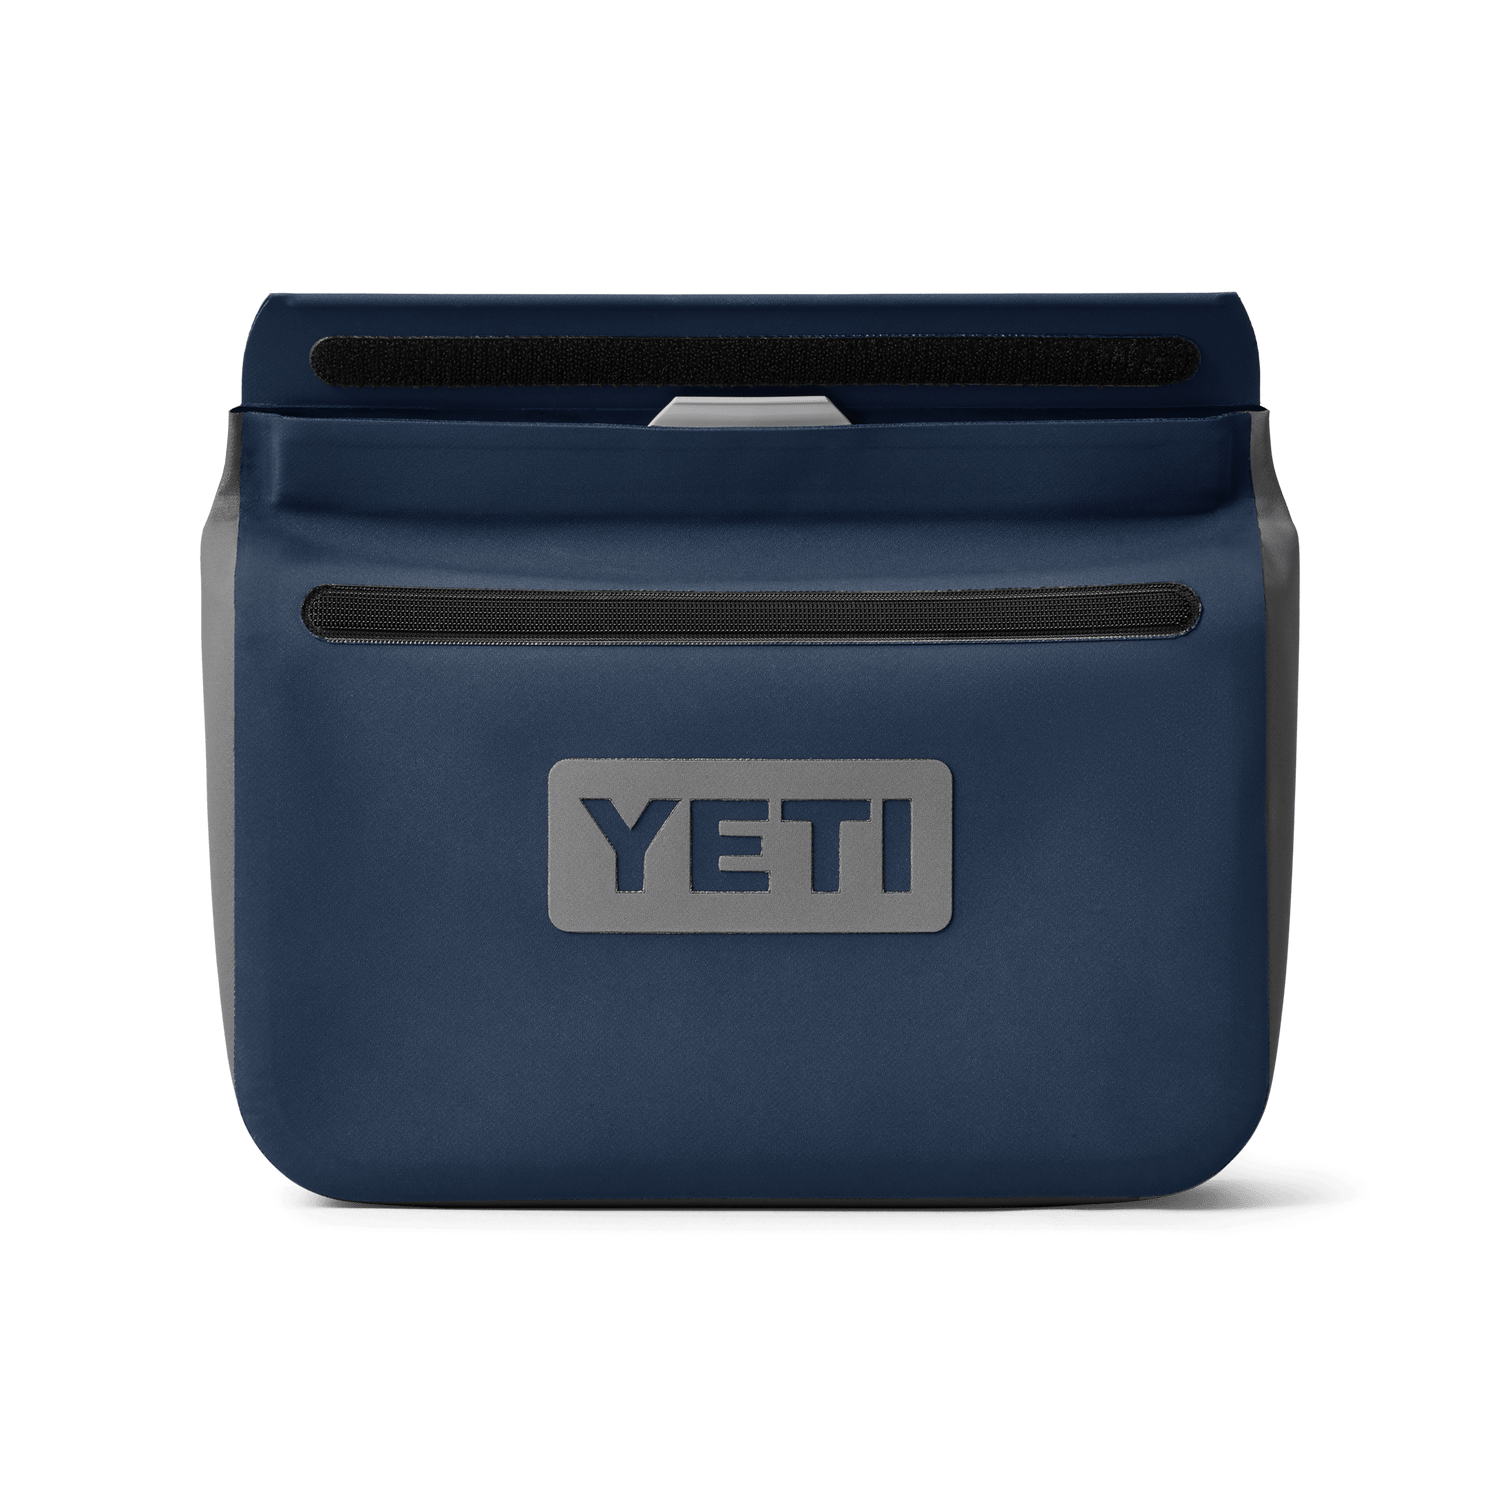 Yeti, Bags, Yeti Sidekick Dry Bag Nwot